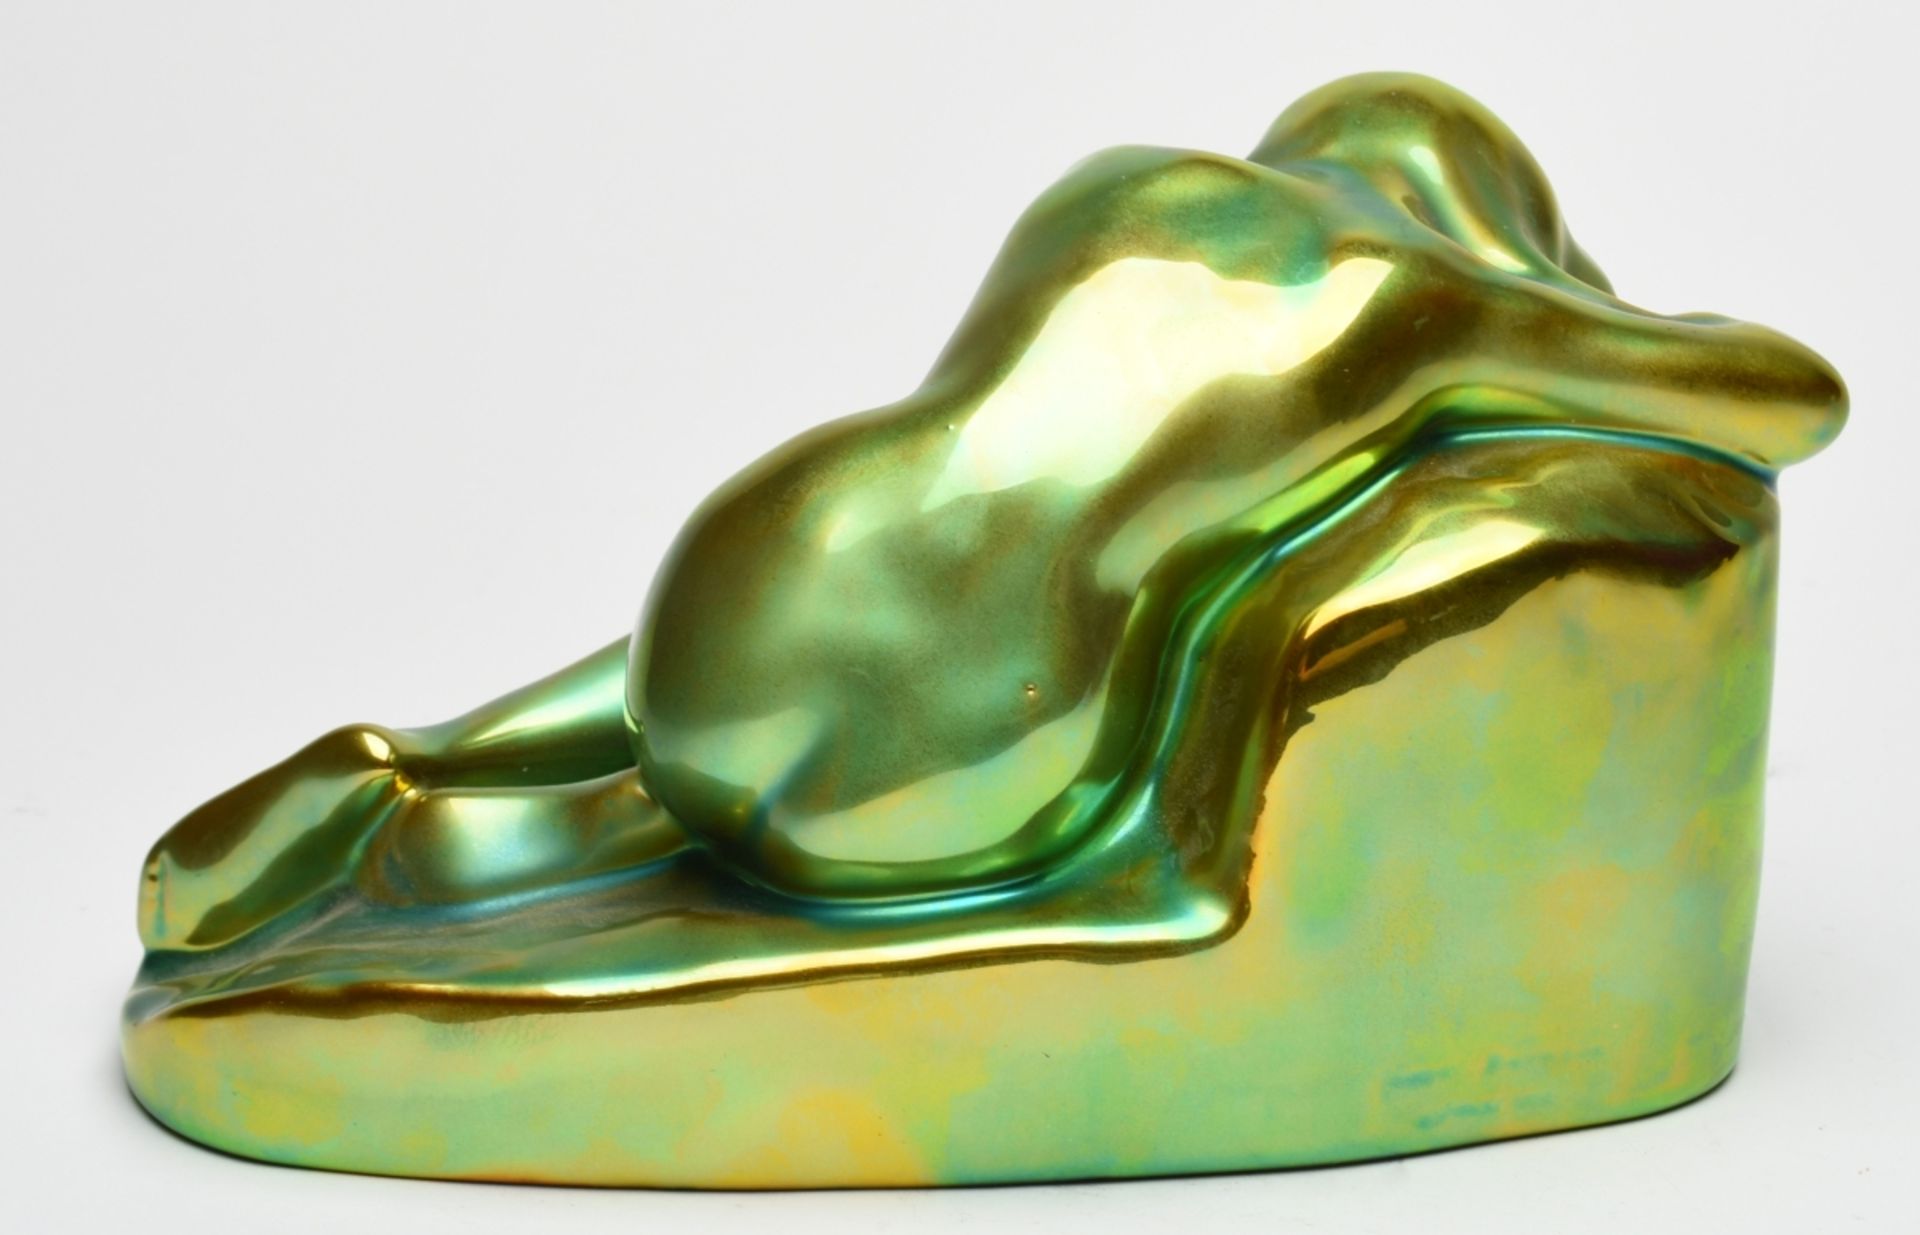 Aktfigur Hersteller: Zsolnay, Pecs/Ungarn, Keramik, in leuchtendem Grün-Gelb glasiert, liegender - Bild 4 aus 4